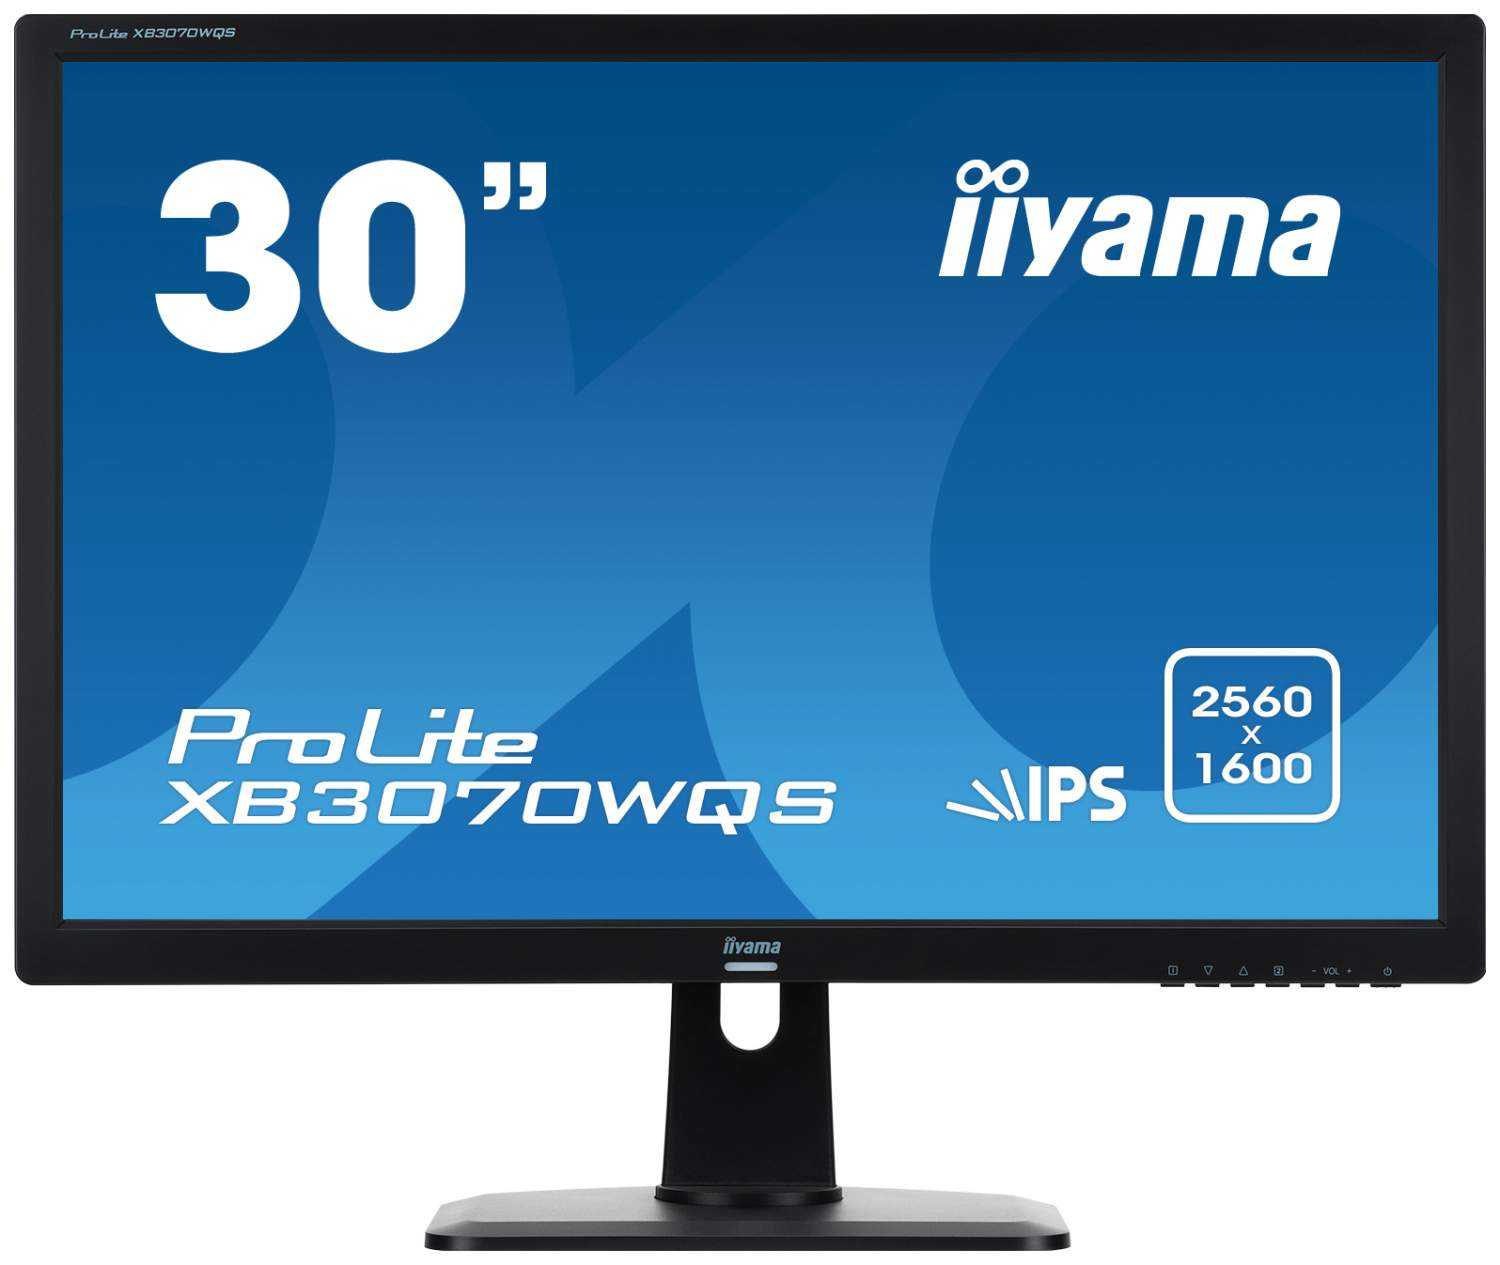 Монитор Iiyama ProLite E2280HS-1 - подробные характеристики обзоры видео фото Цены в интернет-магазинах где можно купить монитор Iiyama ProLite E2280HS-1